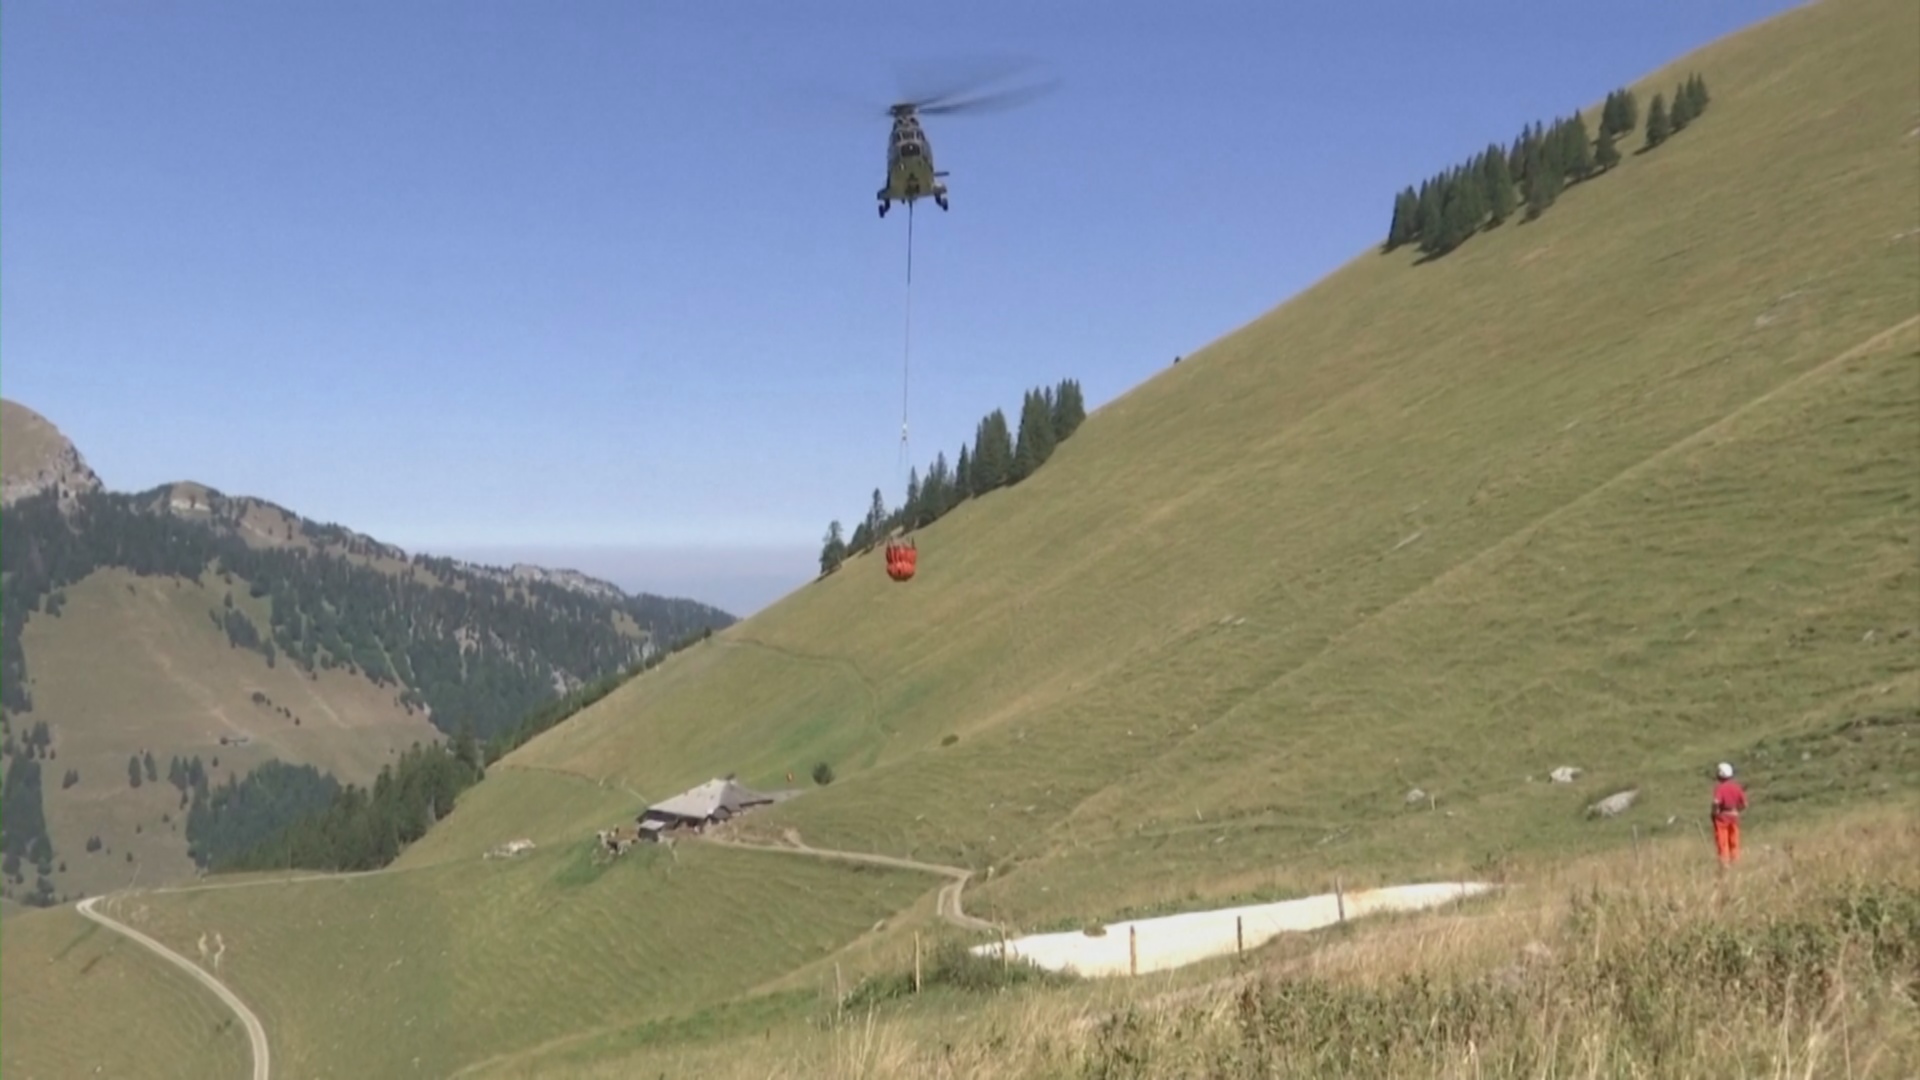 Военные вертолёты доставляют на альпийские луга воду для скота